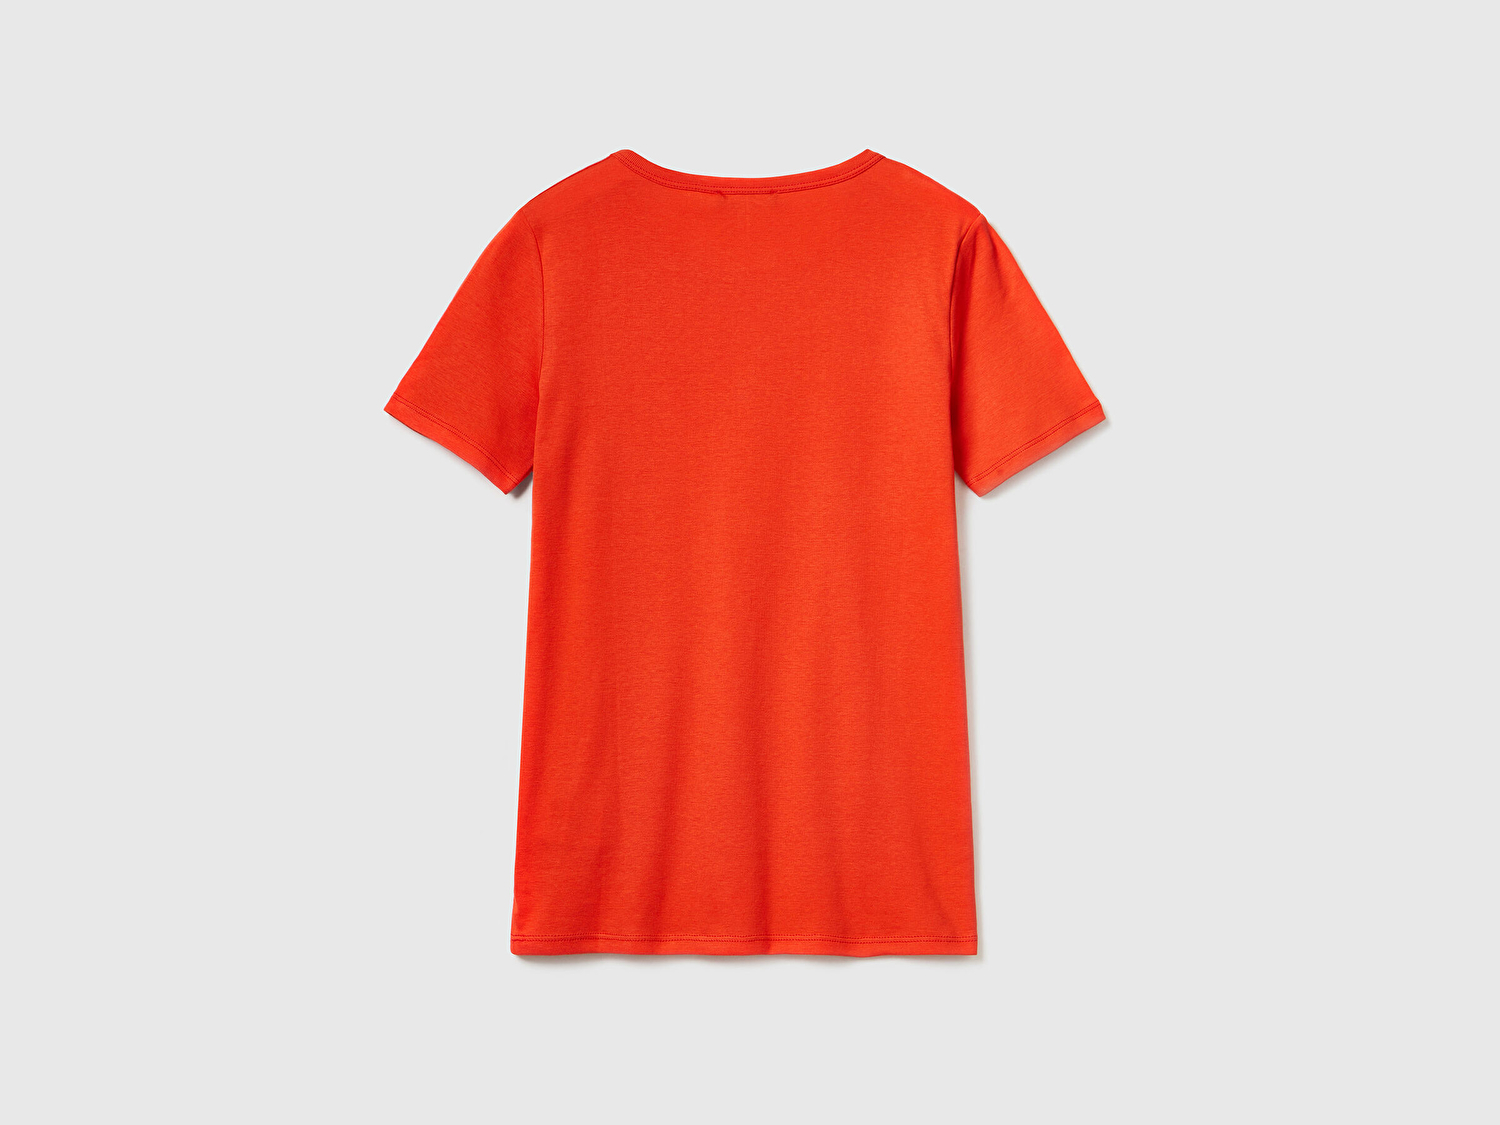 Benetton Kadın Kırmızı %100 Koton Benetton Yazılı Basic T-Shirt